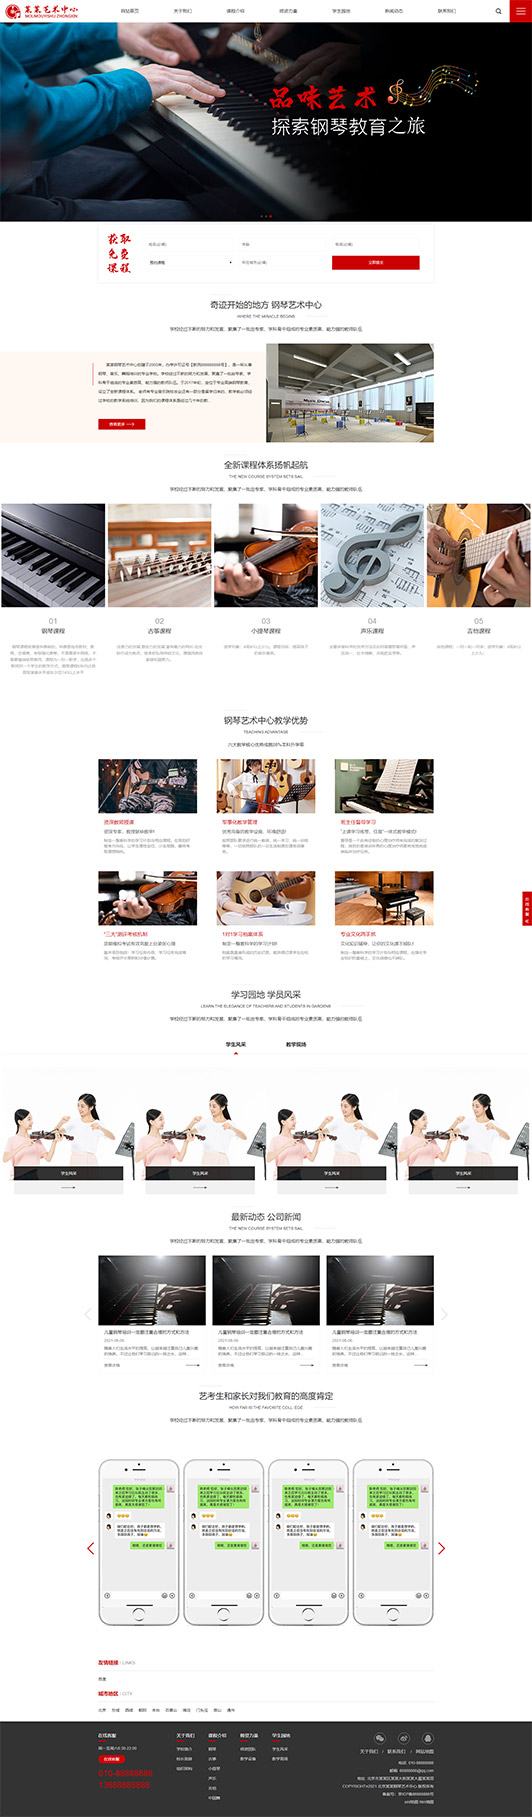 龙岩钢琴艺术培训公司响应式企业网站